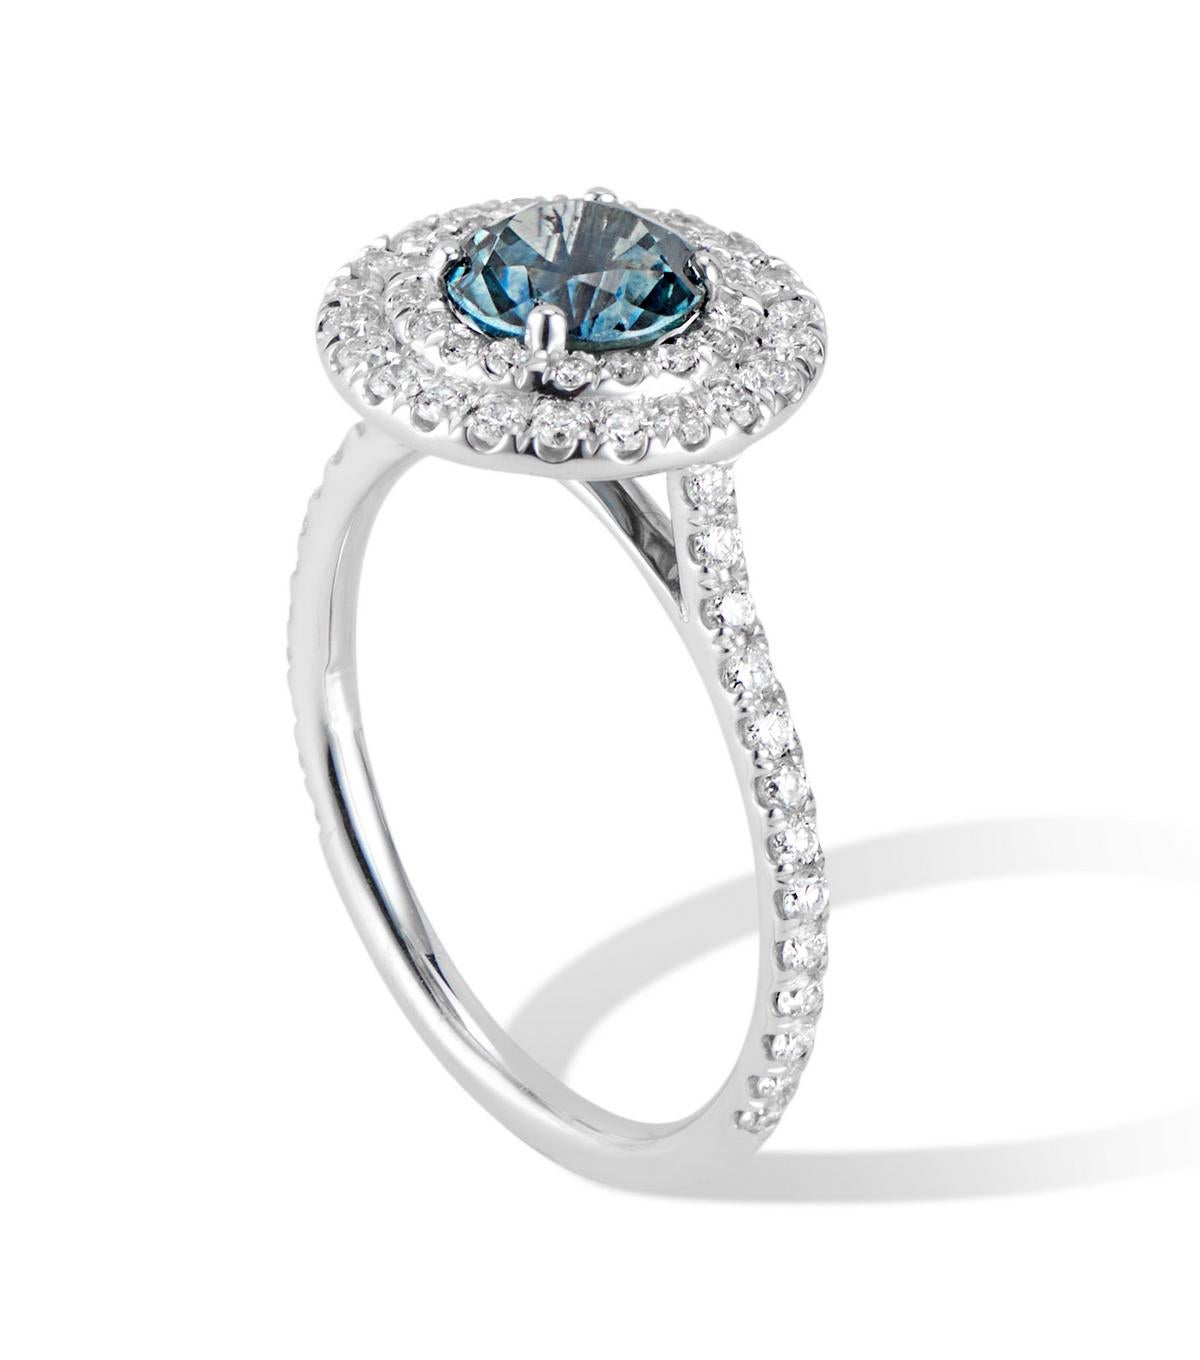 Dieser Ring aus 18 Karat Weißgold mit doppeltem Diamant-Halo und Montana-Saphir ist ein luxuriöses Statement mit seinem funkelnden Pflaster und dem einzigartigen tealblauen Montana-Saphir.

Ideal, wenn Sie einen Ring mit blauem Saphir suchen, aber